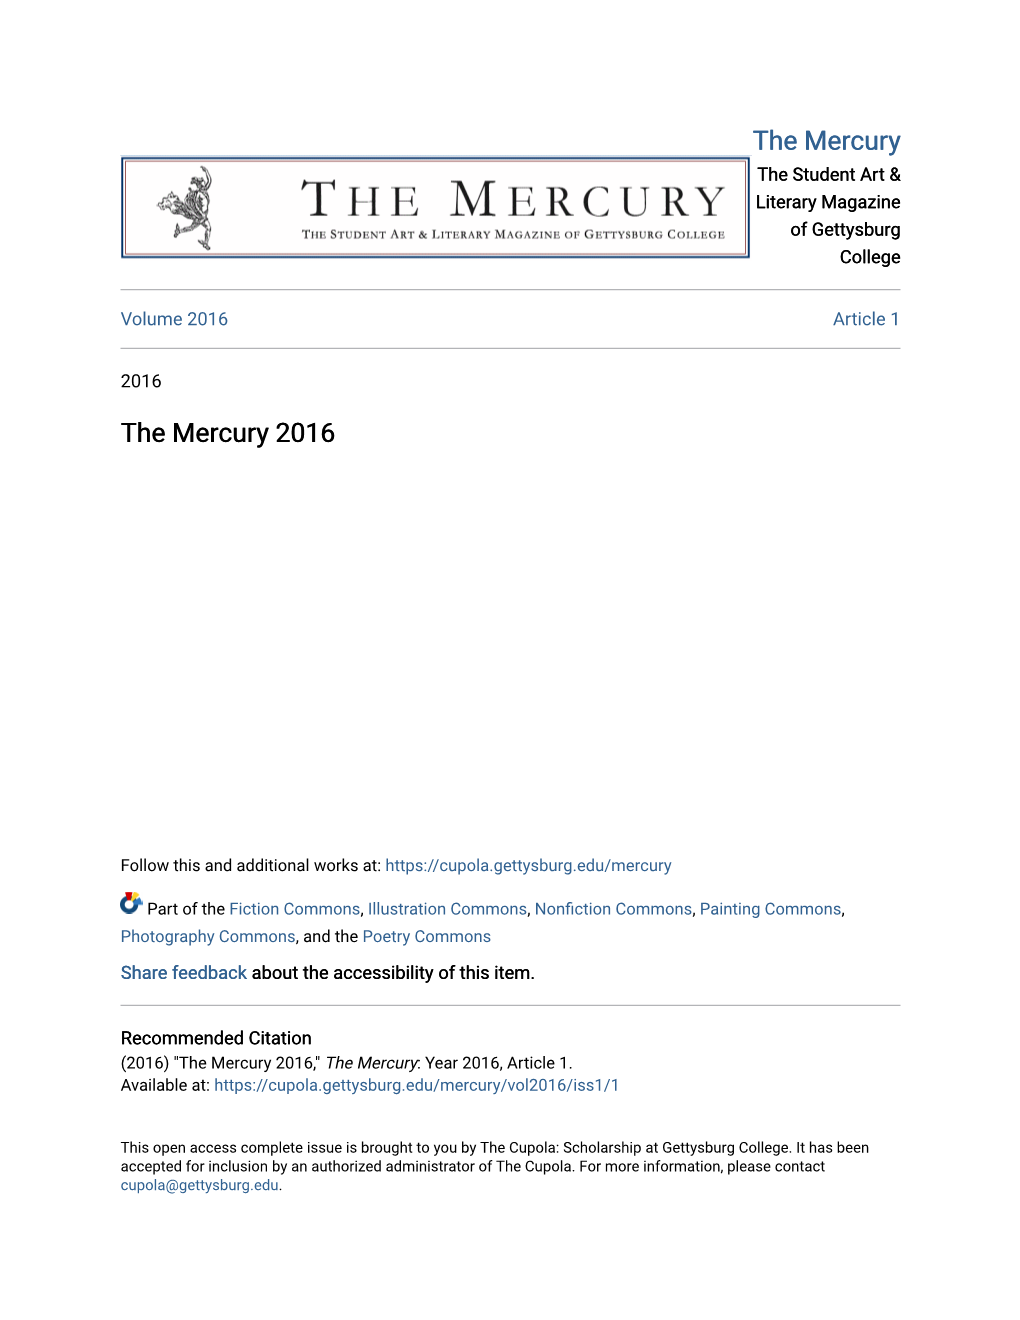 The Mercury 2016